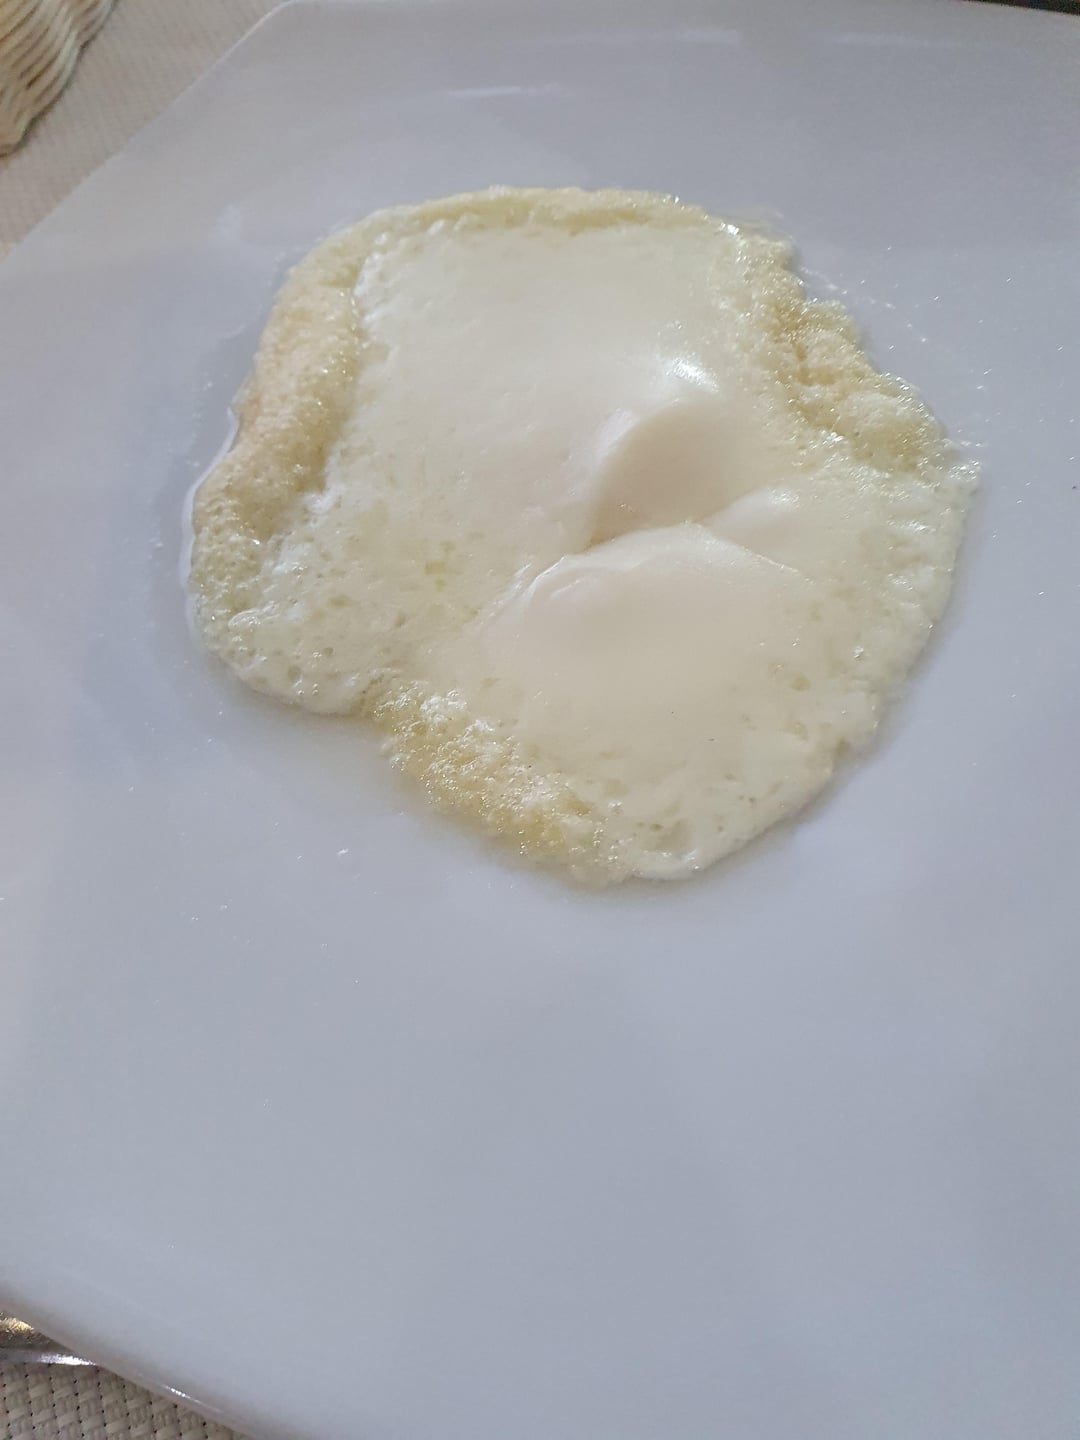 Жареный сыр в итальянском ресторане обошёлся в 6 долларов